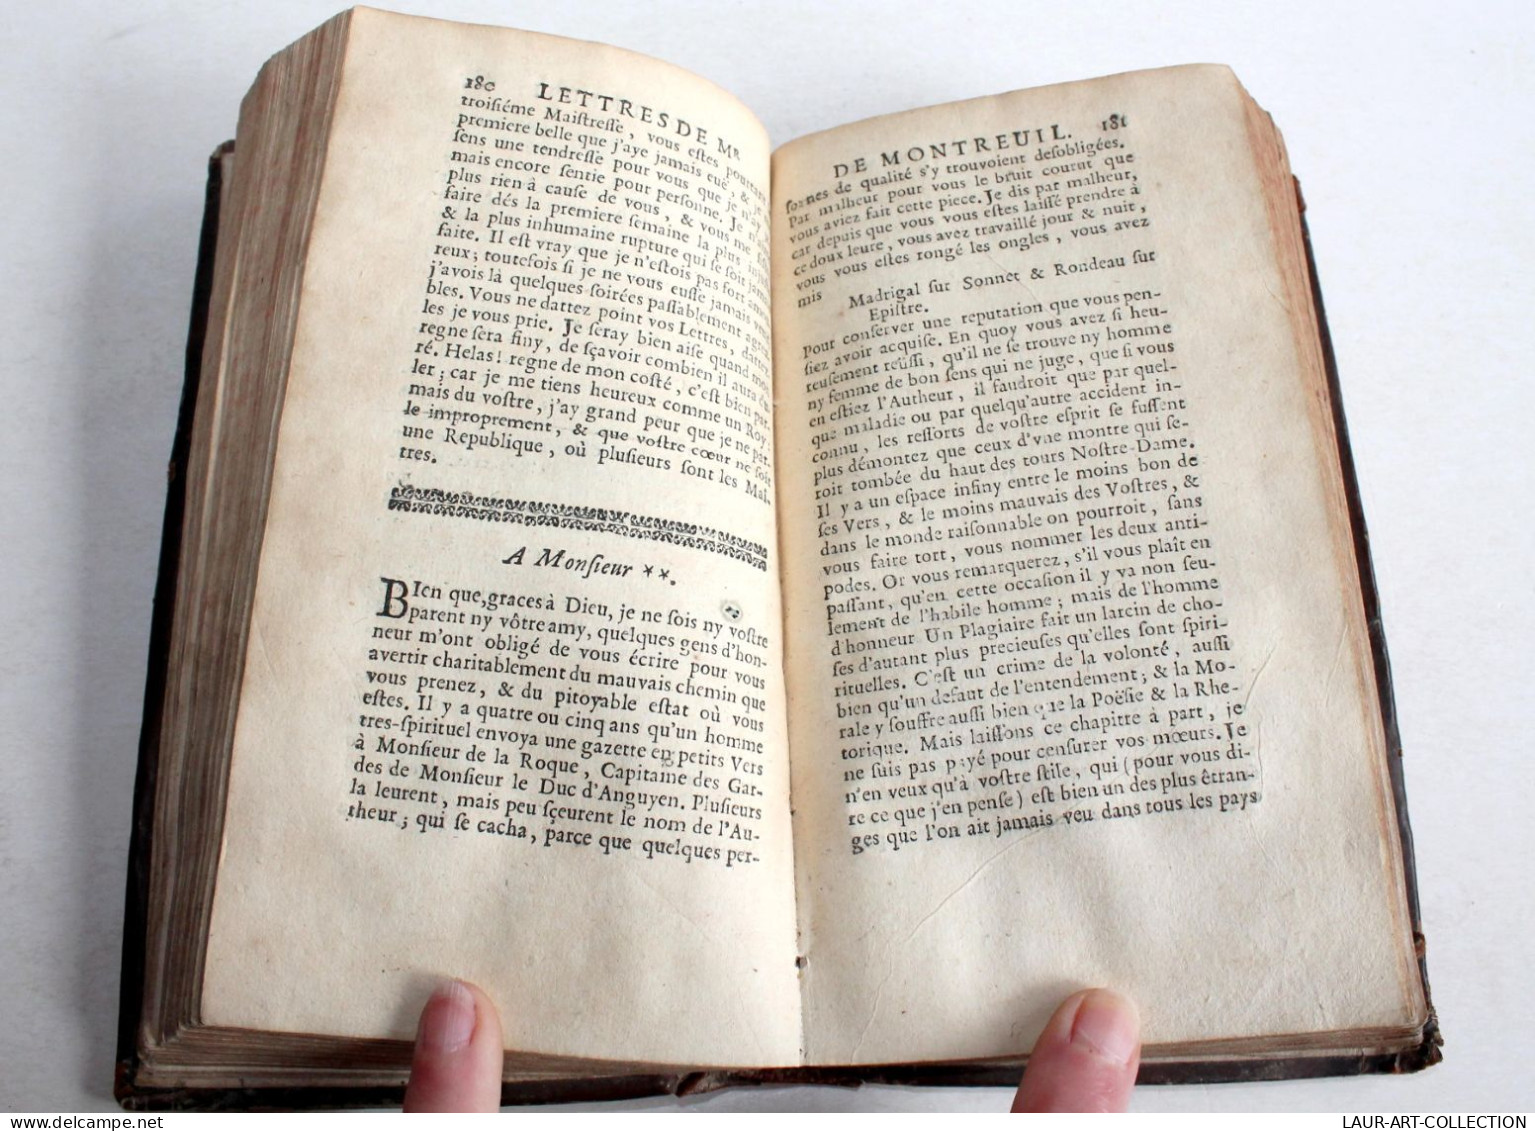 LES OEUVRES DE MONSIEUR DE MONTREUIL 1671 CLAUDE BARBIN, POESIE ET LITTERATURE / ANCIEN LIVRE DU XVIIe SIECLE (2204.9) - Ante 18imo Secolo